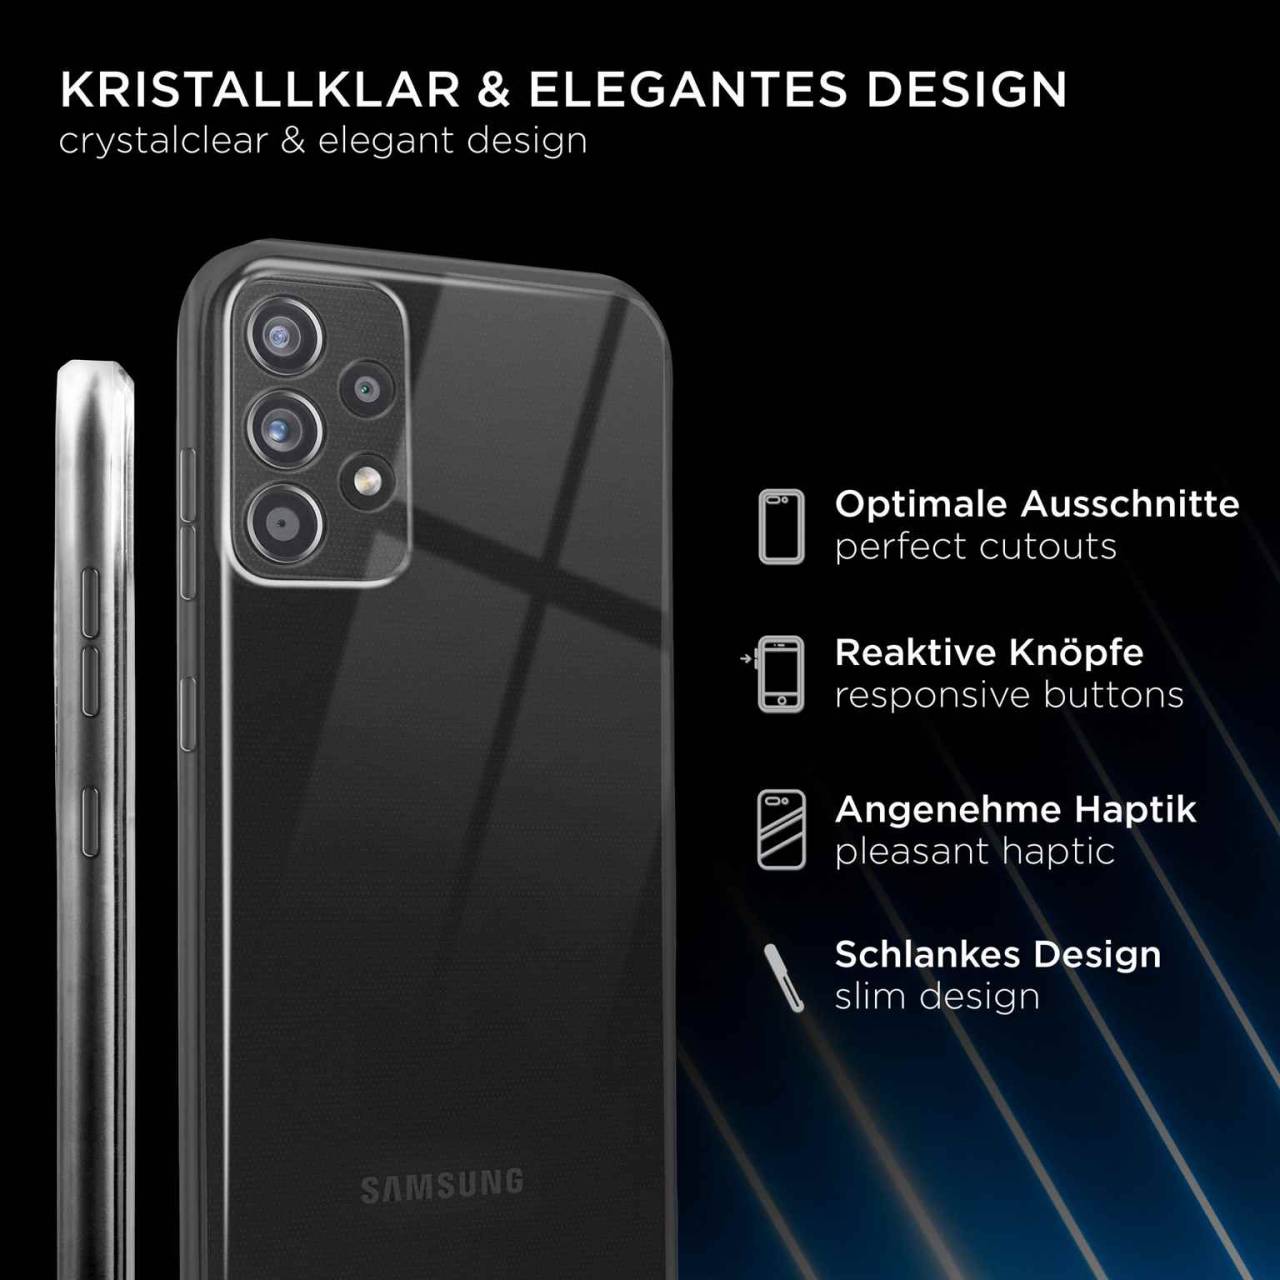 ONEFLOW Clear Case für Samsung Galaxy A72 5G – Transparente Hülle aus Soft Silikon, Extrem schlank